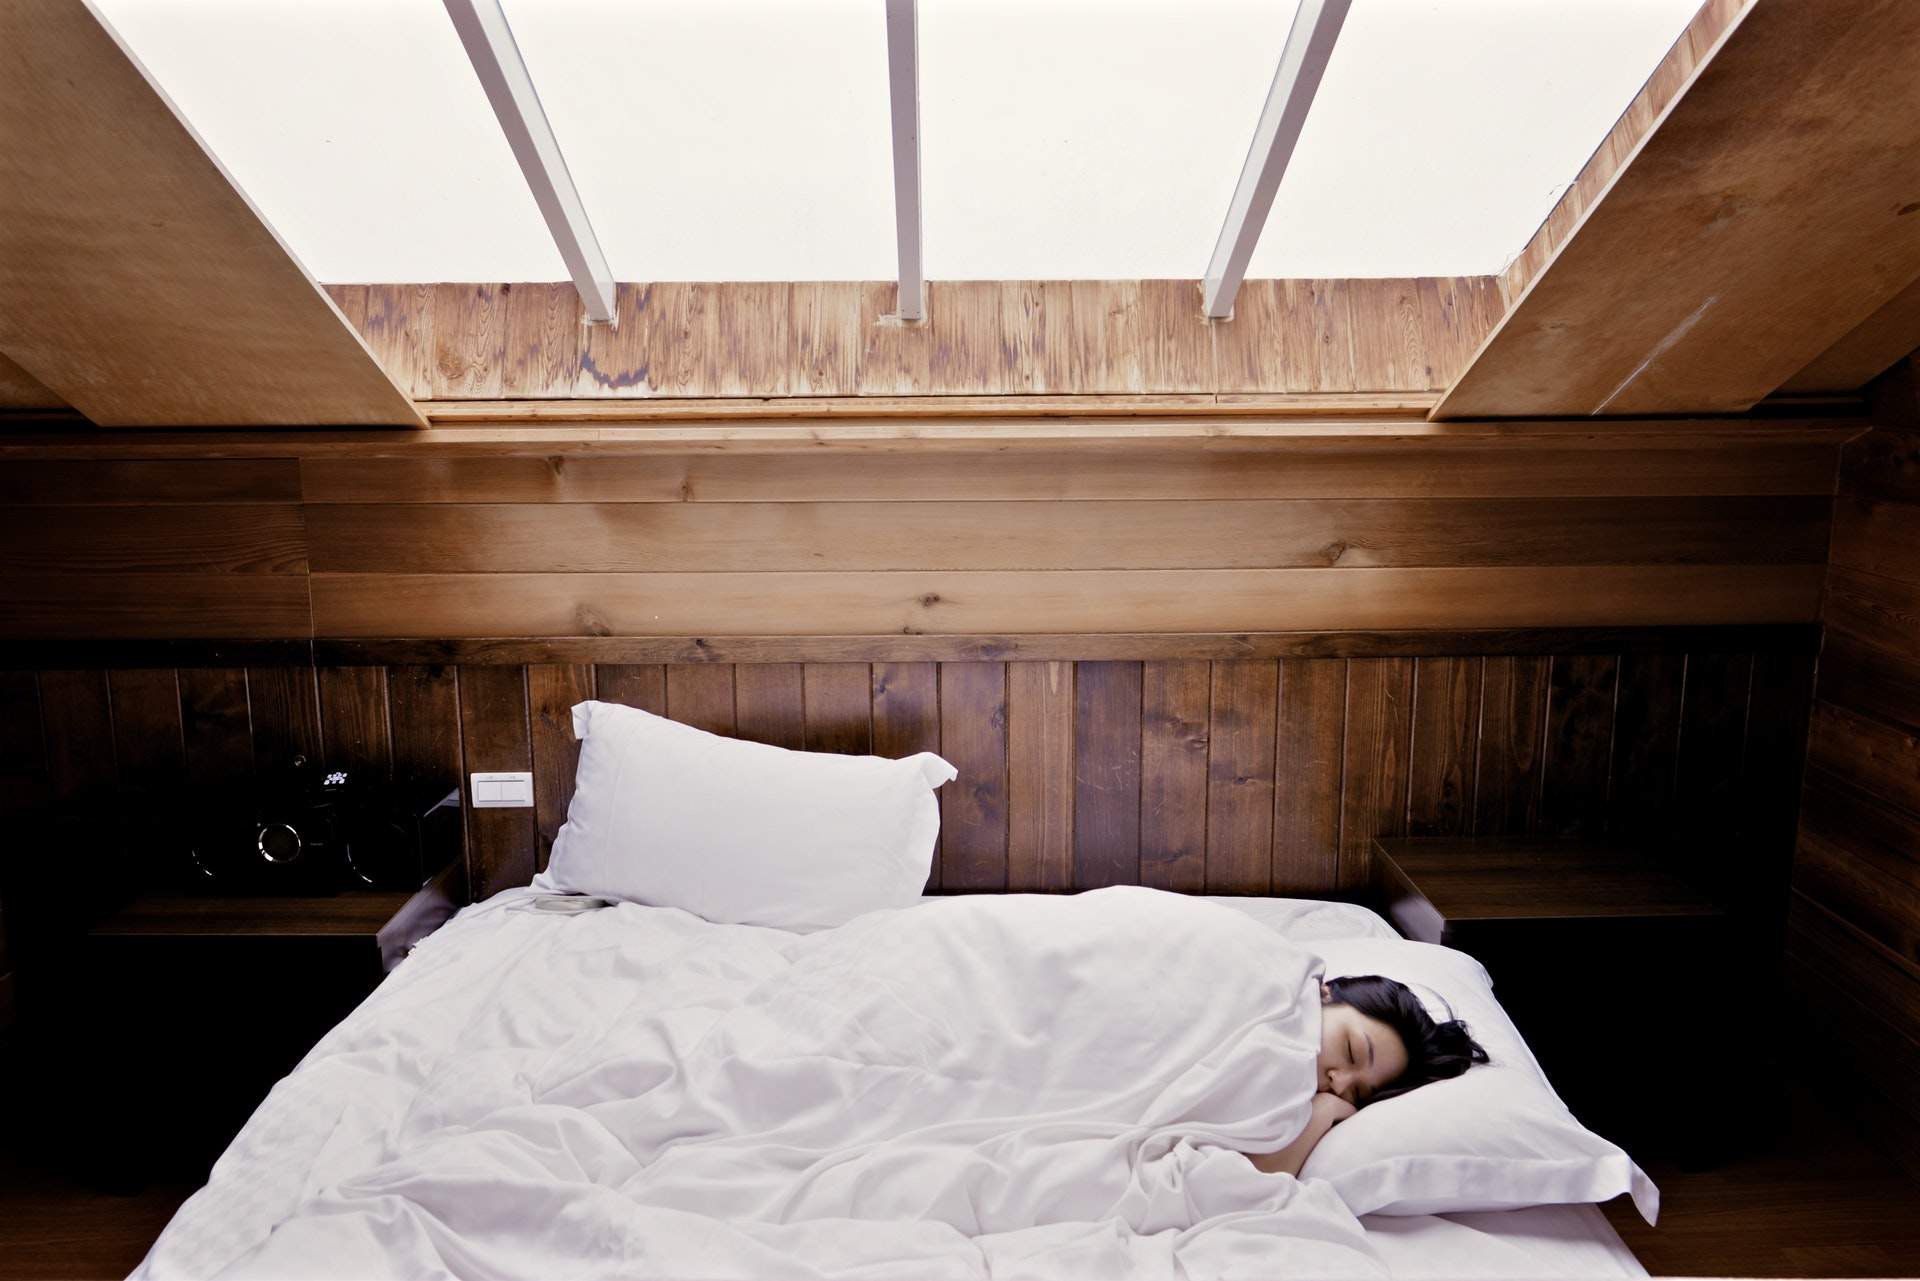 sleep-bed-woman-bedroom-503161